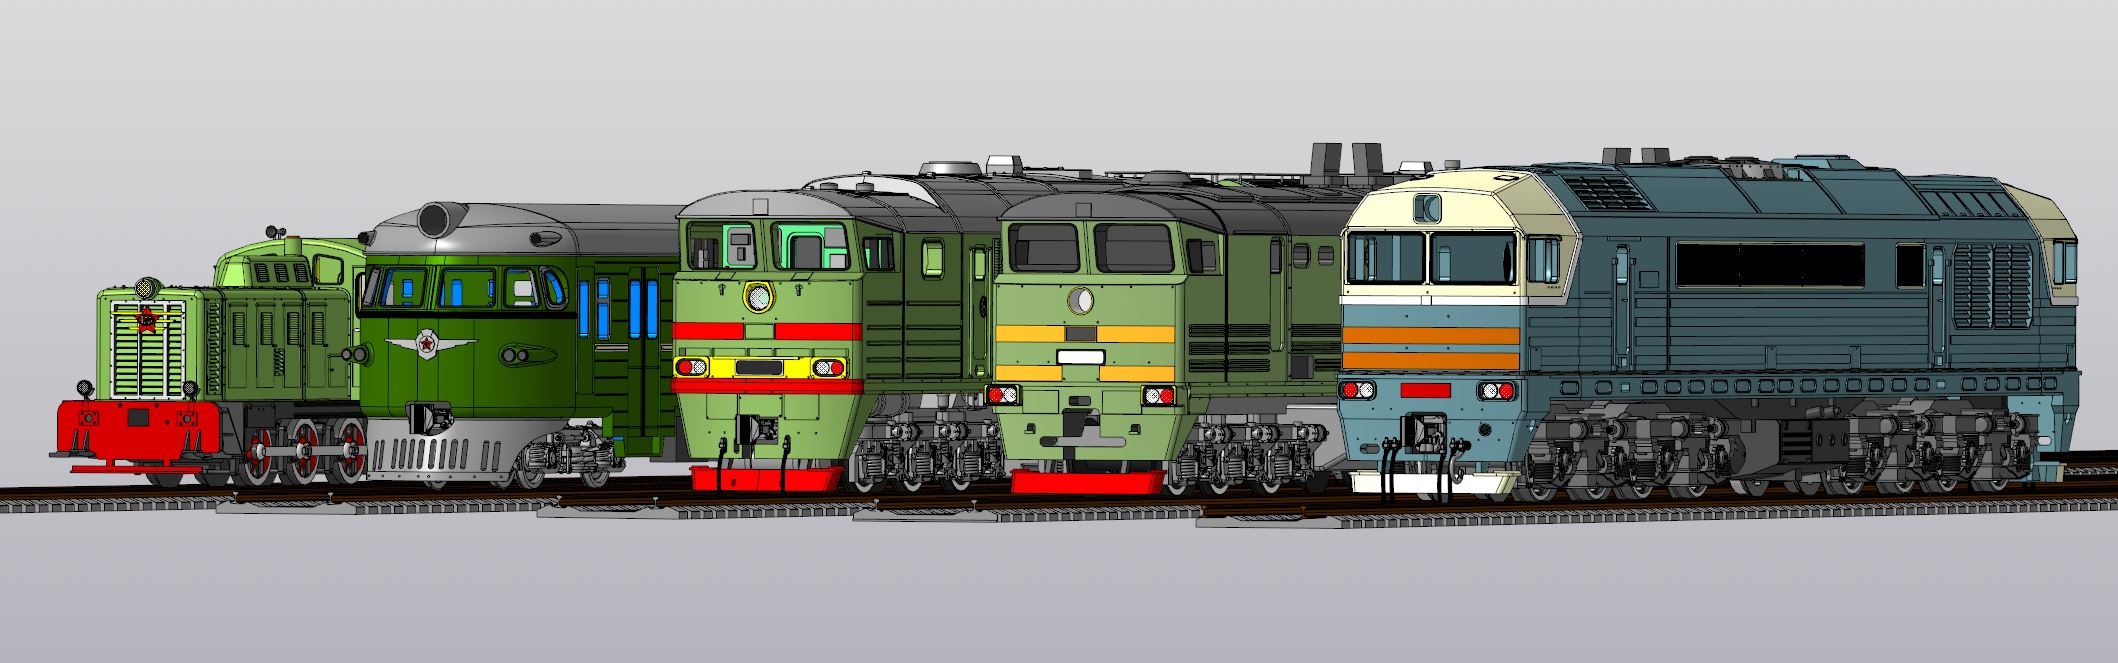 Масштабные модели локомотивов. Автор Станислав Каракин